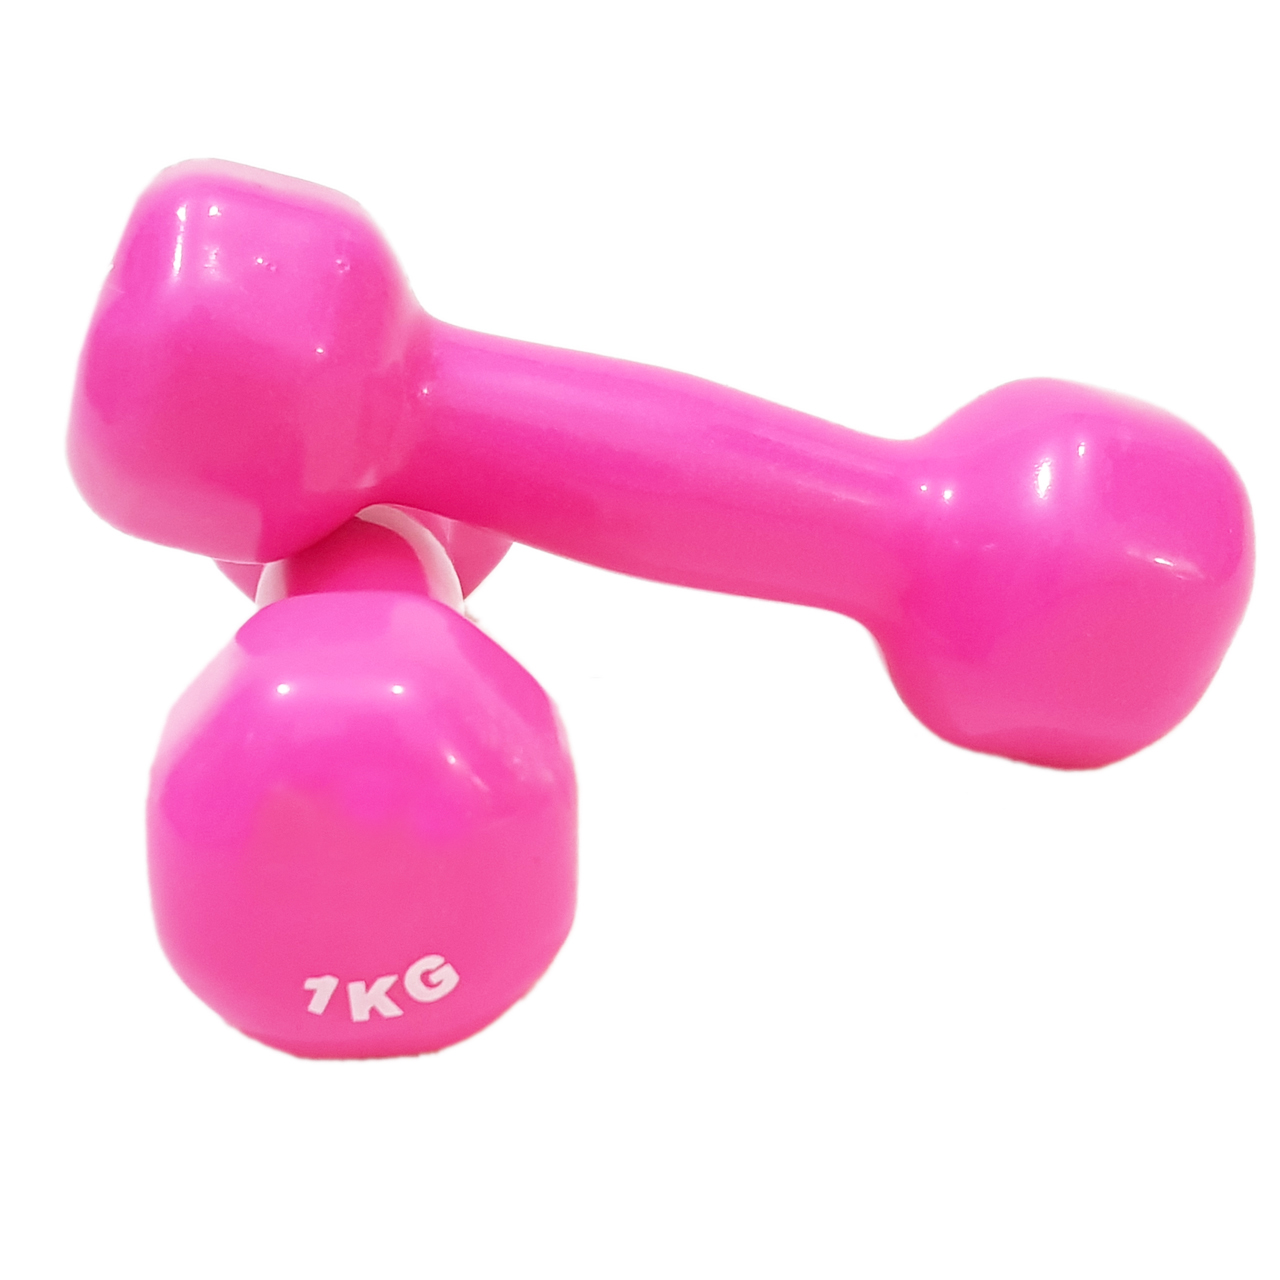 دمبل ایروبیک روکش دار 1 کیلوگرمی مدل 02-Pink بسته دو عددی| خرید دمبل بدنسازی